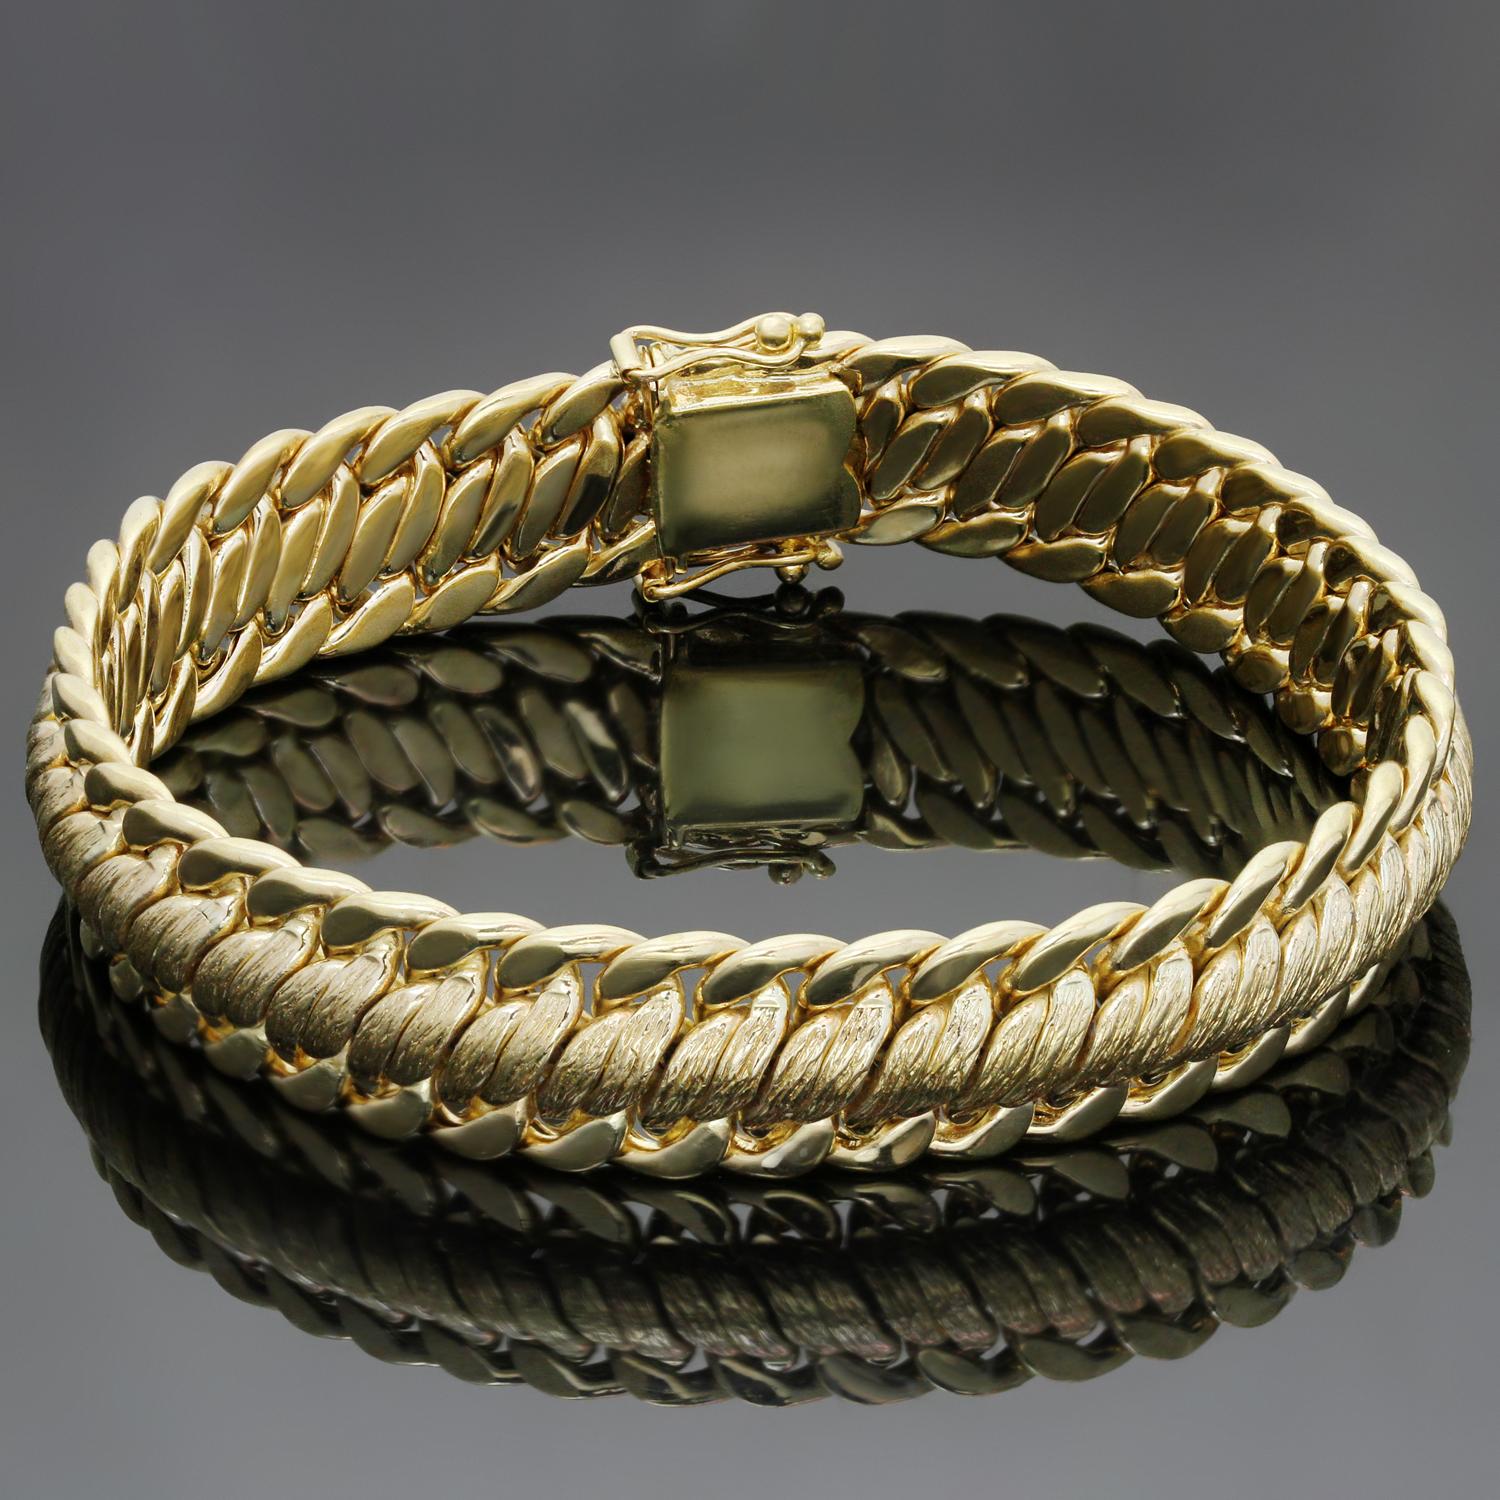 Ce bracelet vintage classique présente un élégant maillage tressé en or jaune 18 carats multitexturé. Fabriqué aux États-Unis vers les années 1970. Dimensions : 0,47